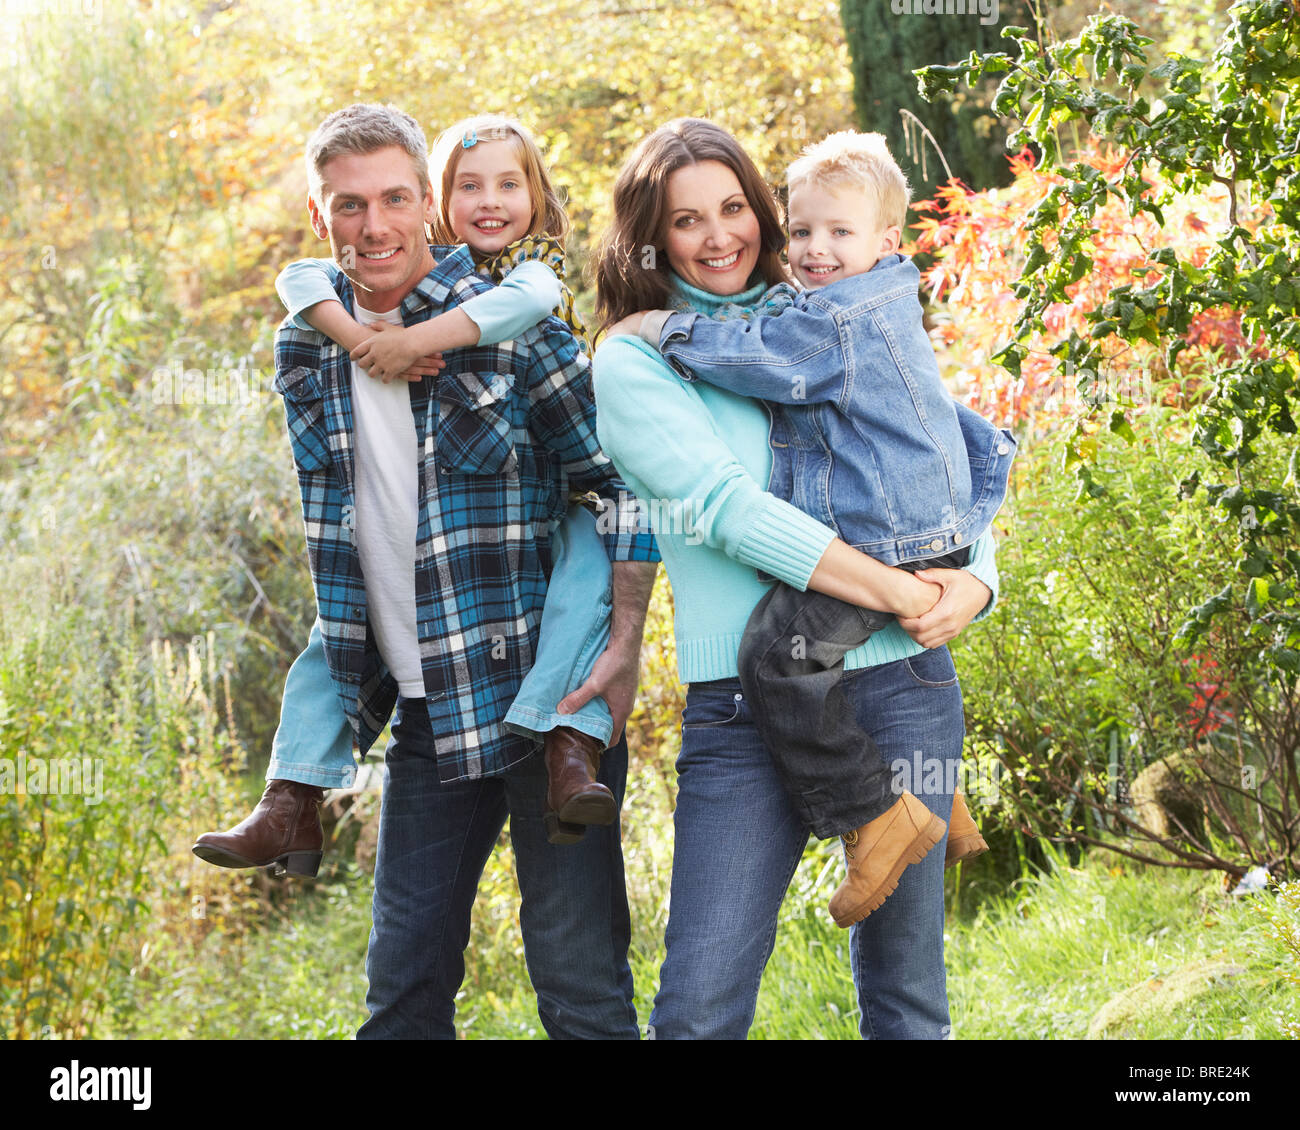 Groupe familial à l'extérieur en paysage d'automne avec les parents qui s'y greffent Chiildren Banque D'Images